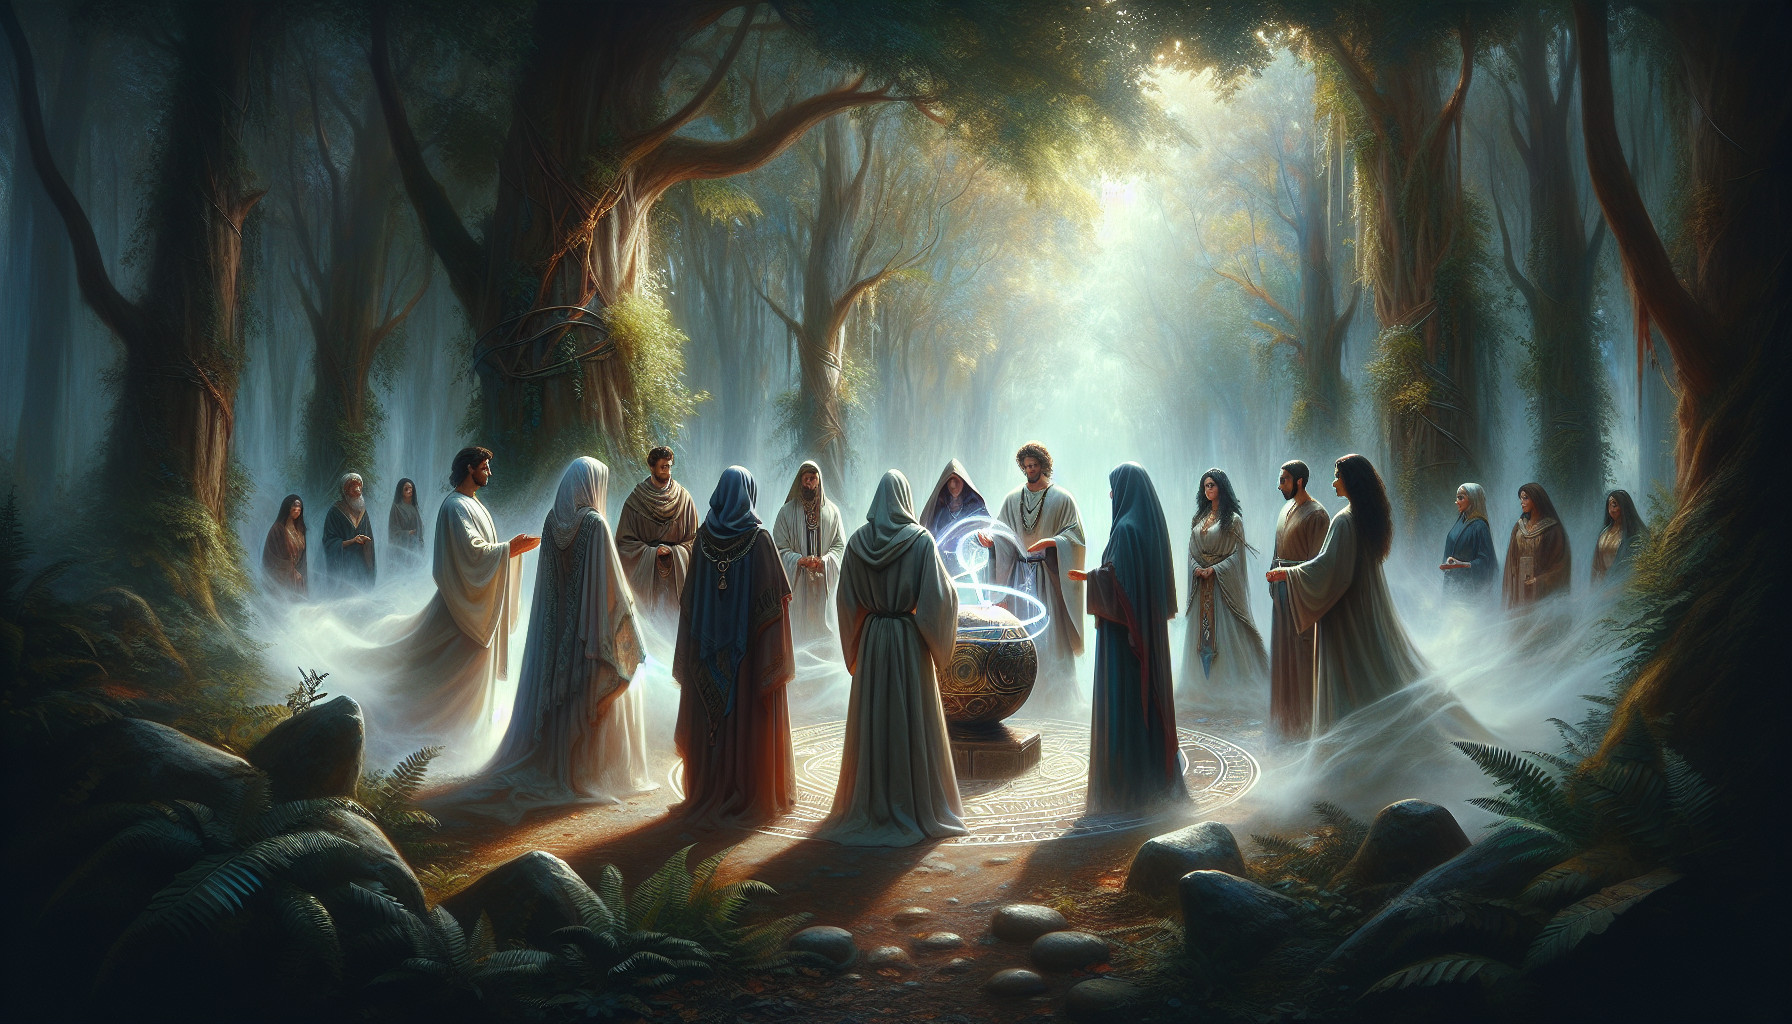 Rituales De Iniciación En La Magia: Pasando A Nuevos Niveles De Conocimiento